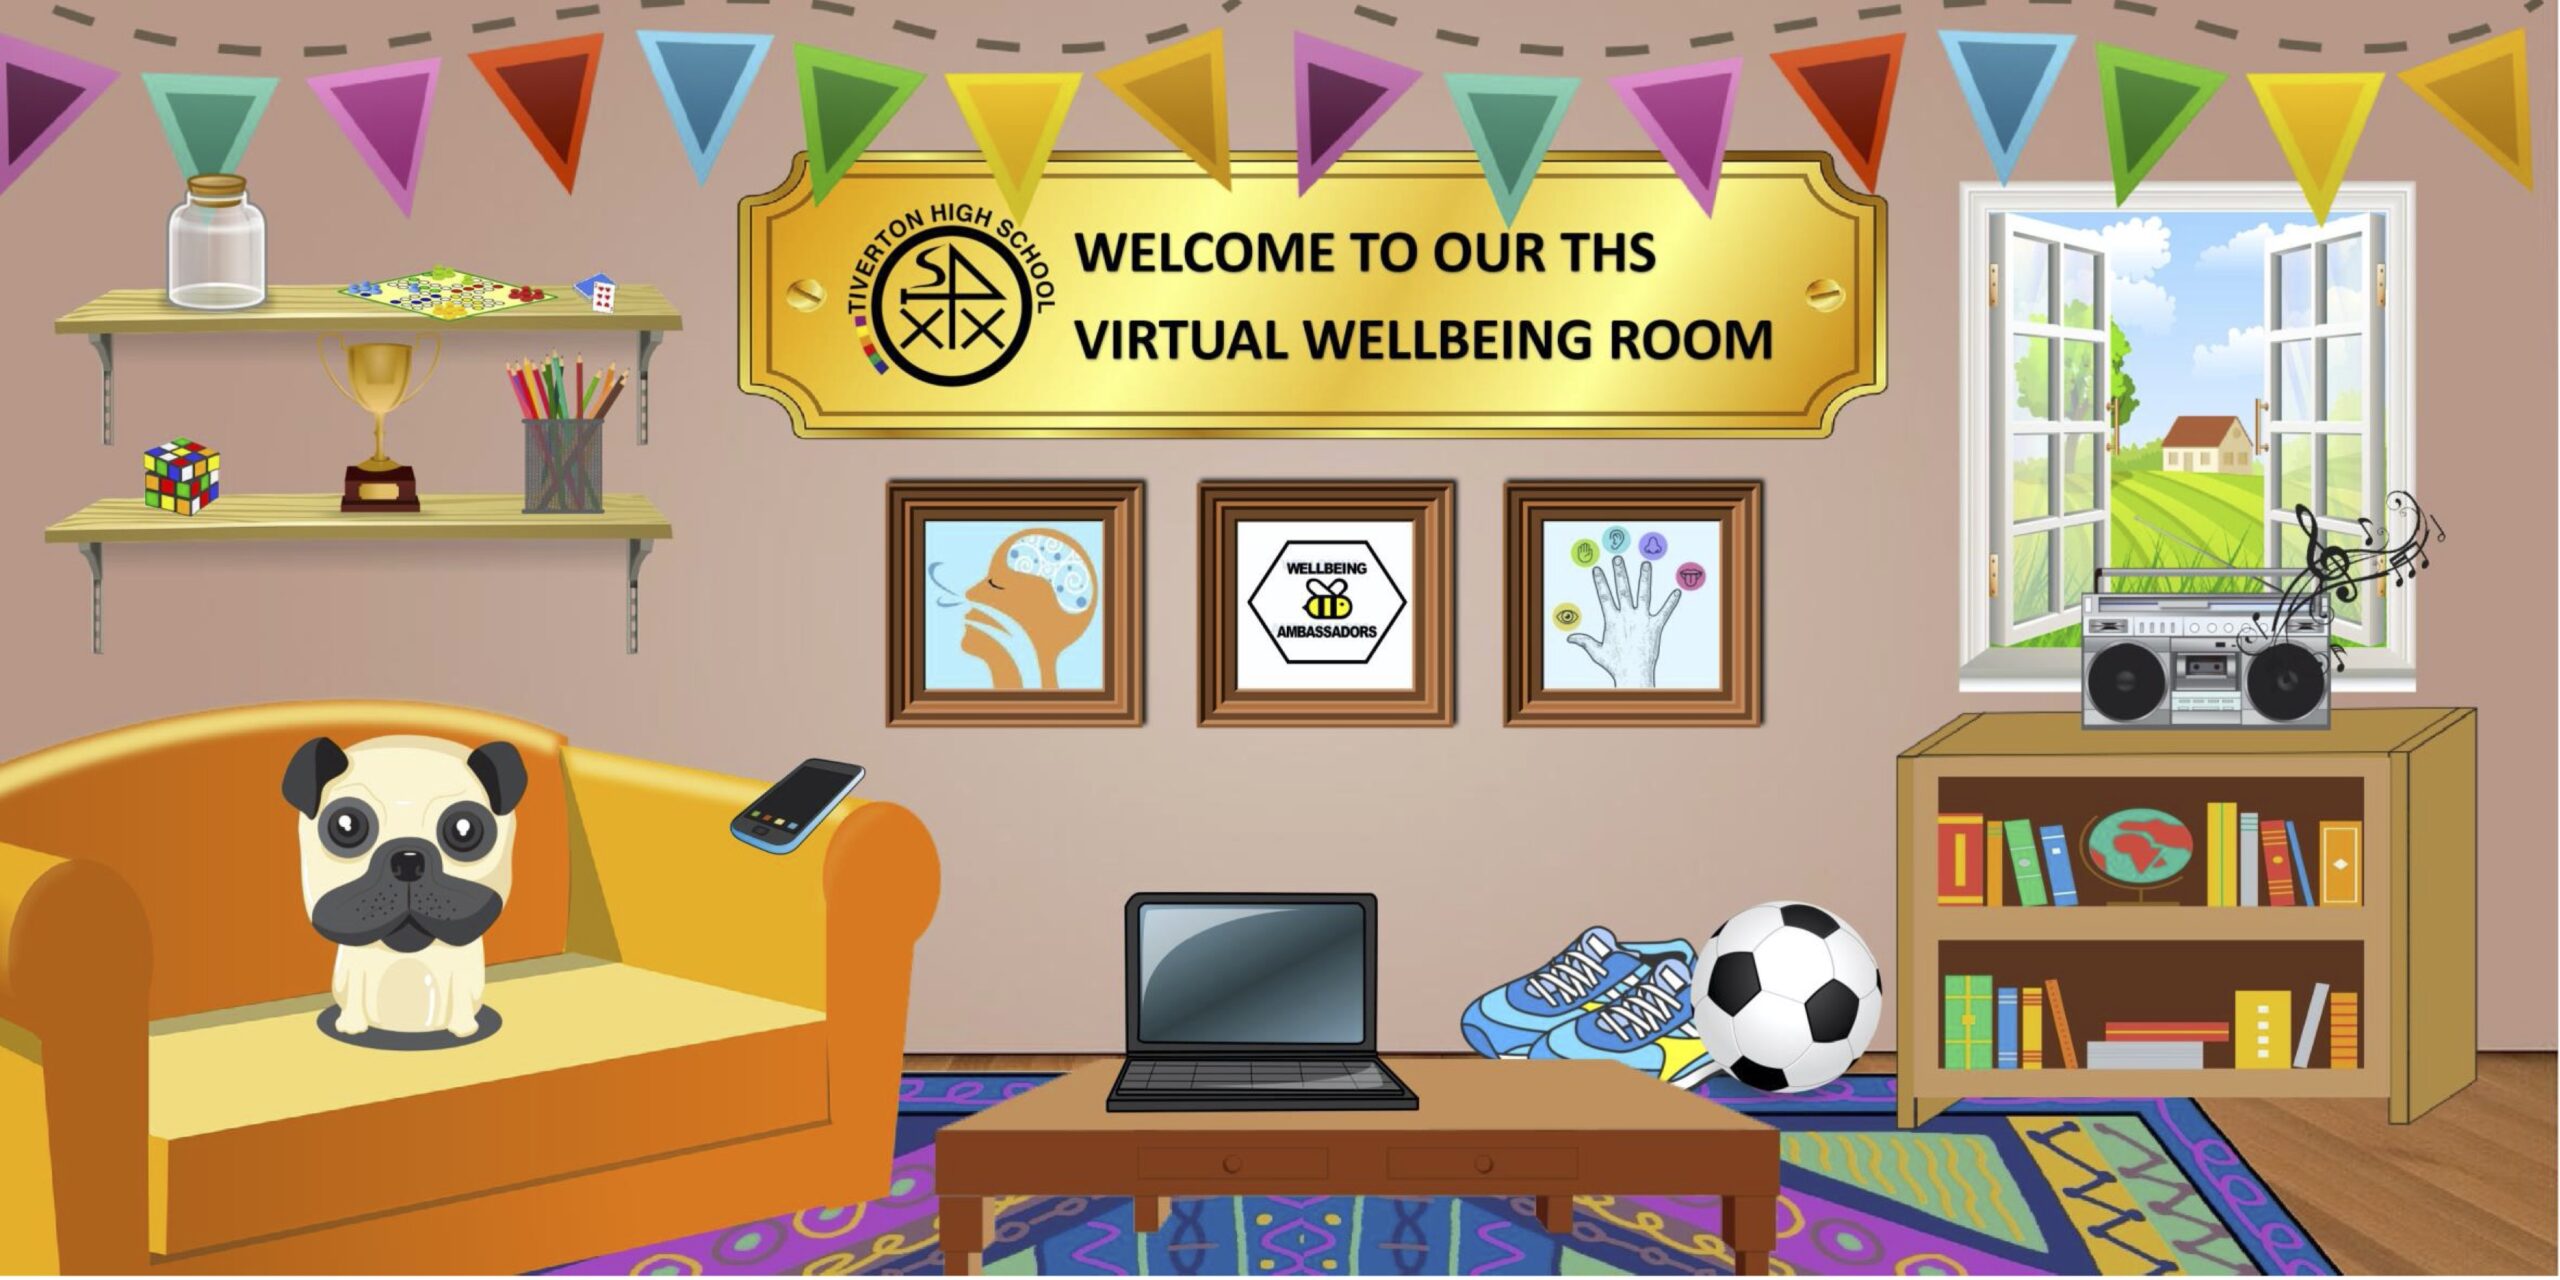 Virtual wellbeing